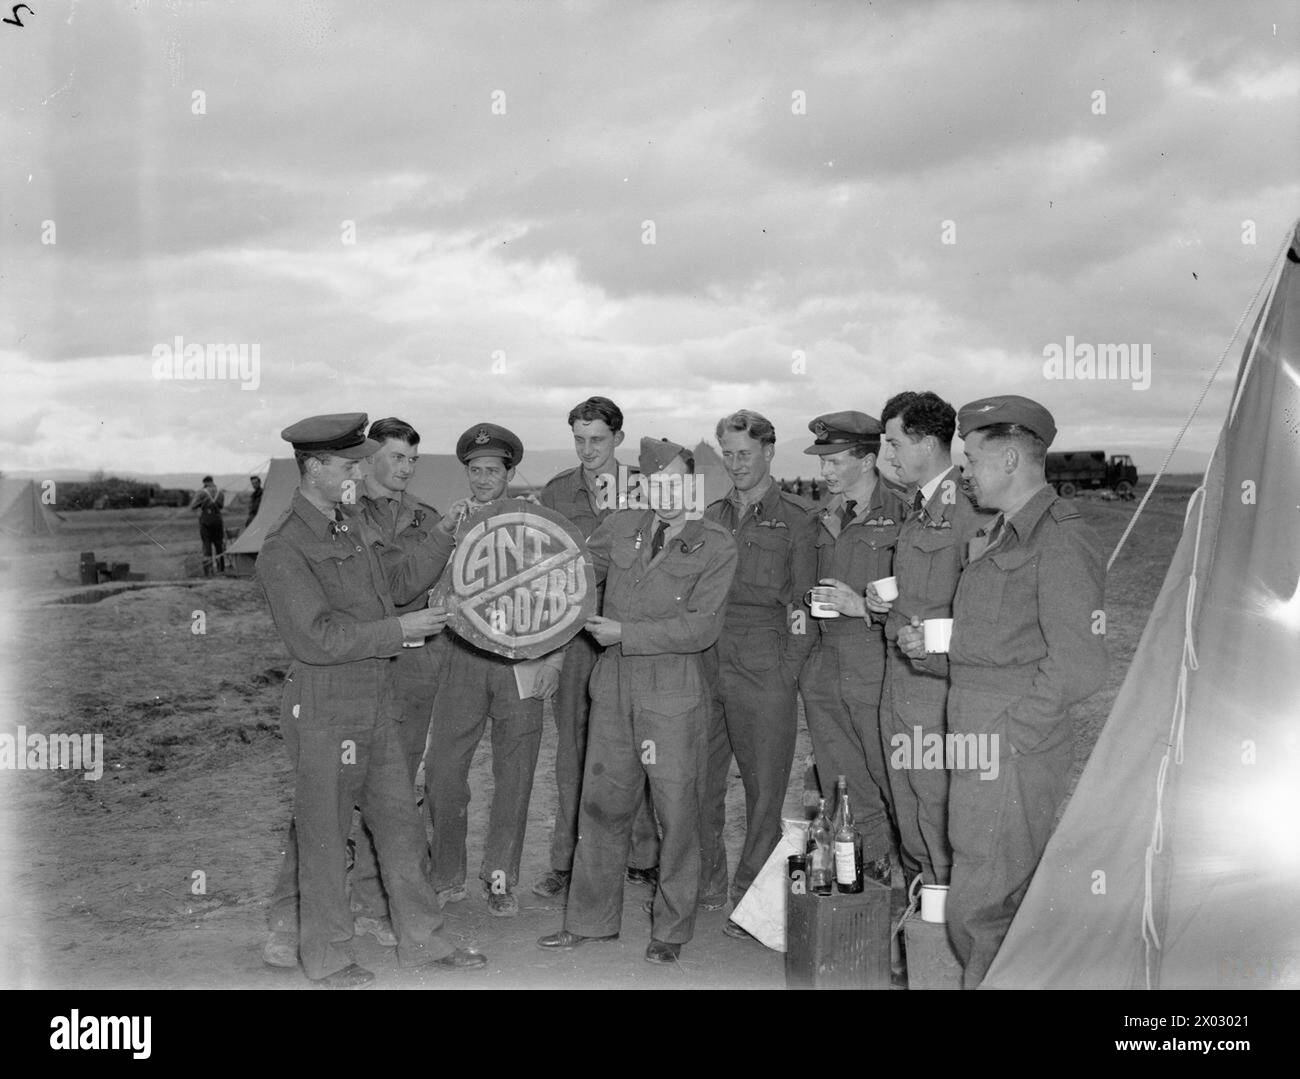 OPÉRATIONS DE LA ROYAL AIR FORCE AU MOYEN-ORIENT ET EN AFRIQUE DU NORD, 1939-1943. - Flying Officer d H Greaves (à l'extrême gauche) et Adjudant F M Robbins (cinquième à partir de la gauche), une équipe de combat nocturne réussie de Bristol Beaufighter avec le No. 255 Squadron RAF, montrent un trophée coupé à leur cinquième victime, un Cant Z1007 qu'ils ont intercepté au-dessus d'os dans la nuit du 18/19 janvier 1943, à d'autres membres de l'escadron à Sétif, Algérie. Le groupe comprend le commandant du N° 255, le commandant de l'escadre d P d G Kelly, debout deuxième à partir de la droite. Greaves (pilote) et Robbins (opérateur radar) ont Uni leurs forces whil Banque D'Images